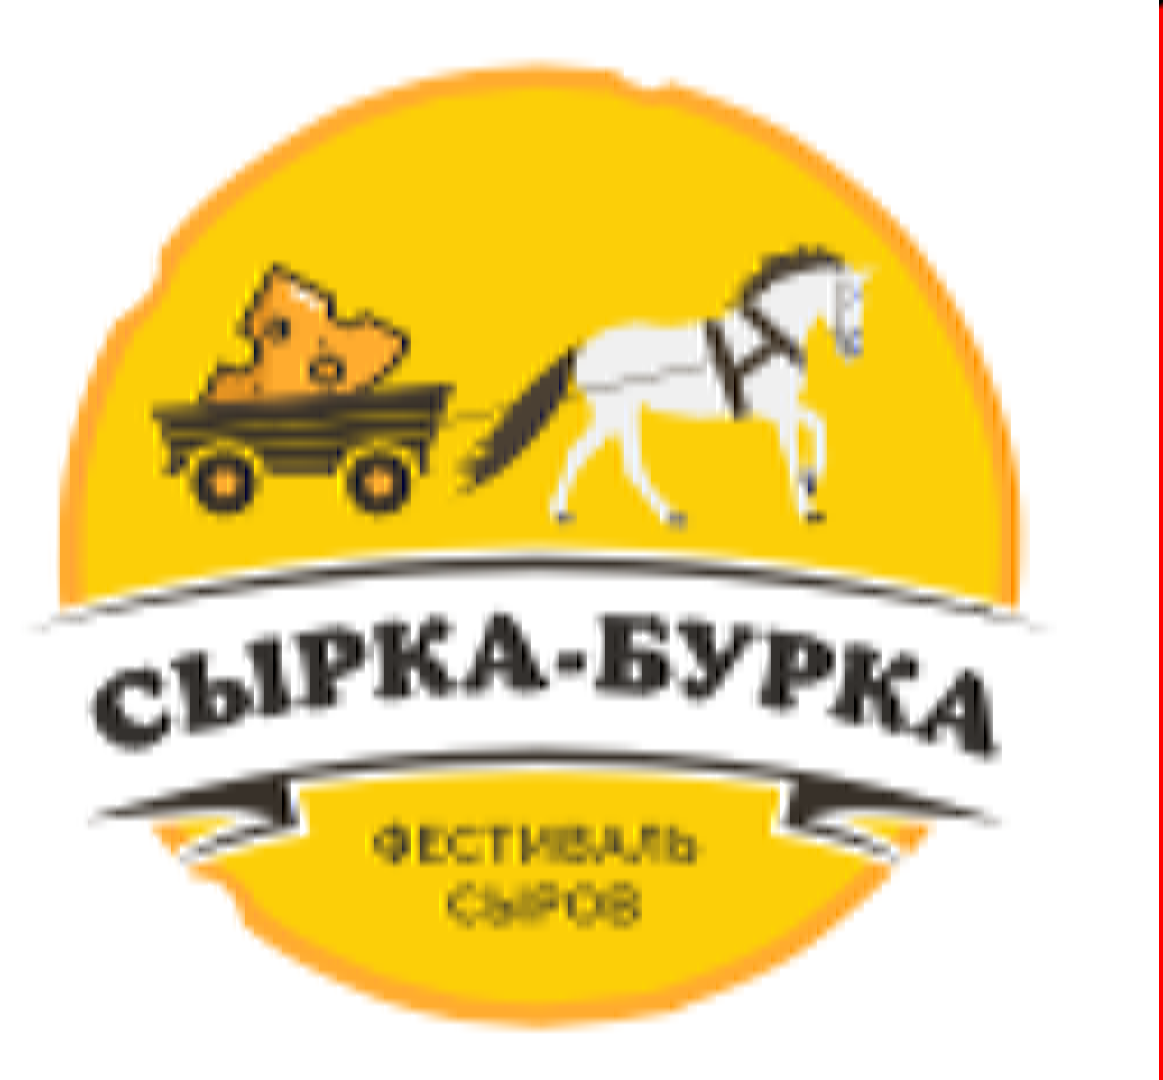 Фестиваль сыров "Сырка - Бурка"